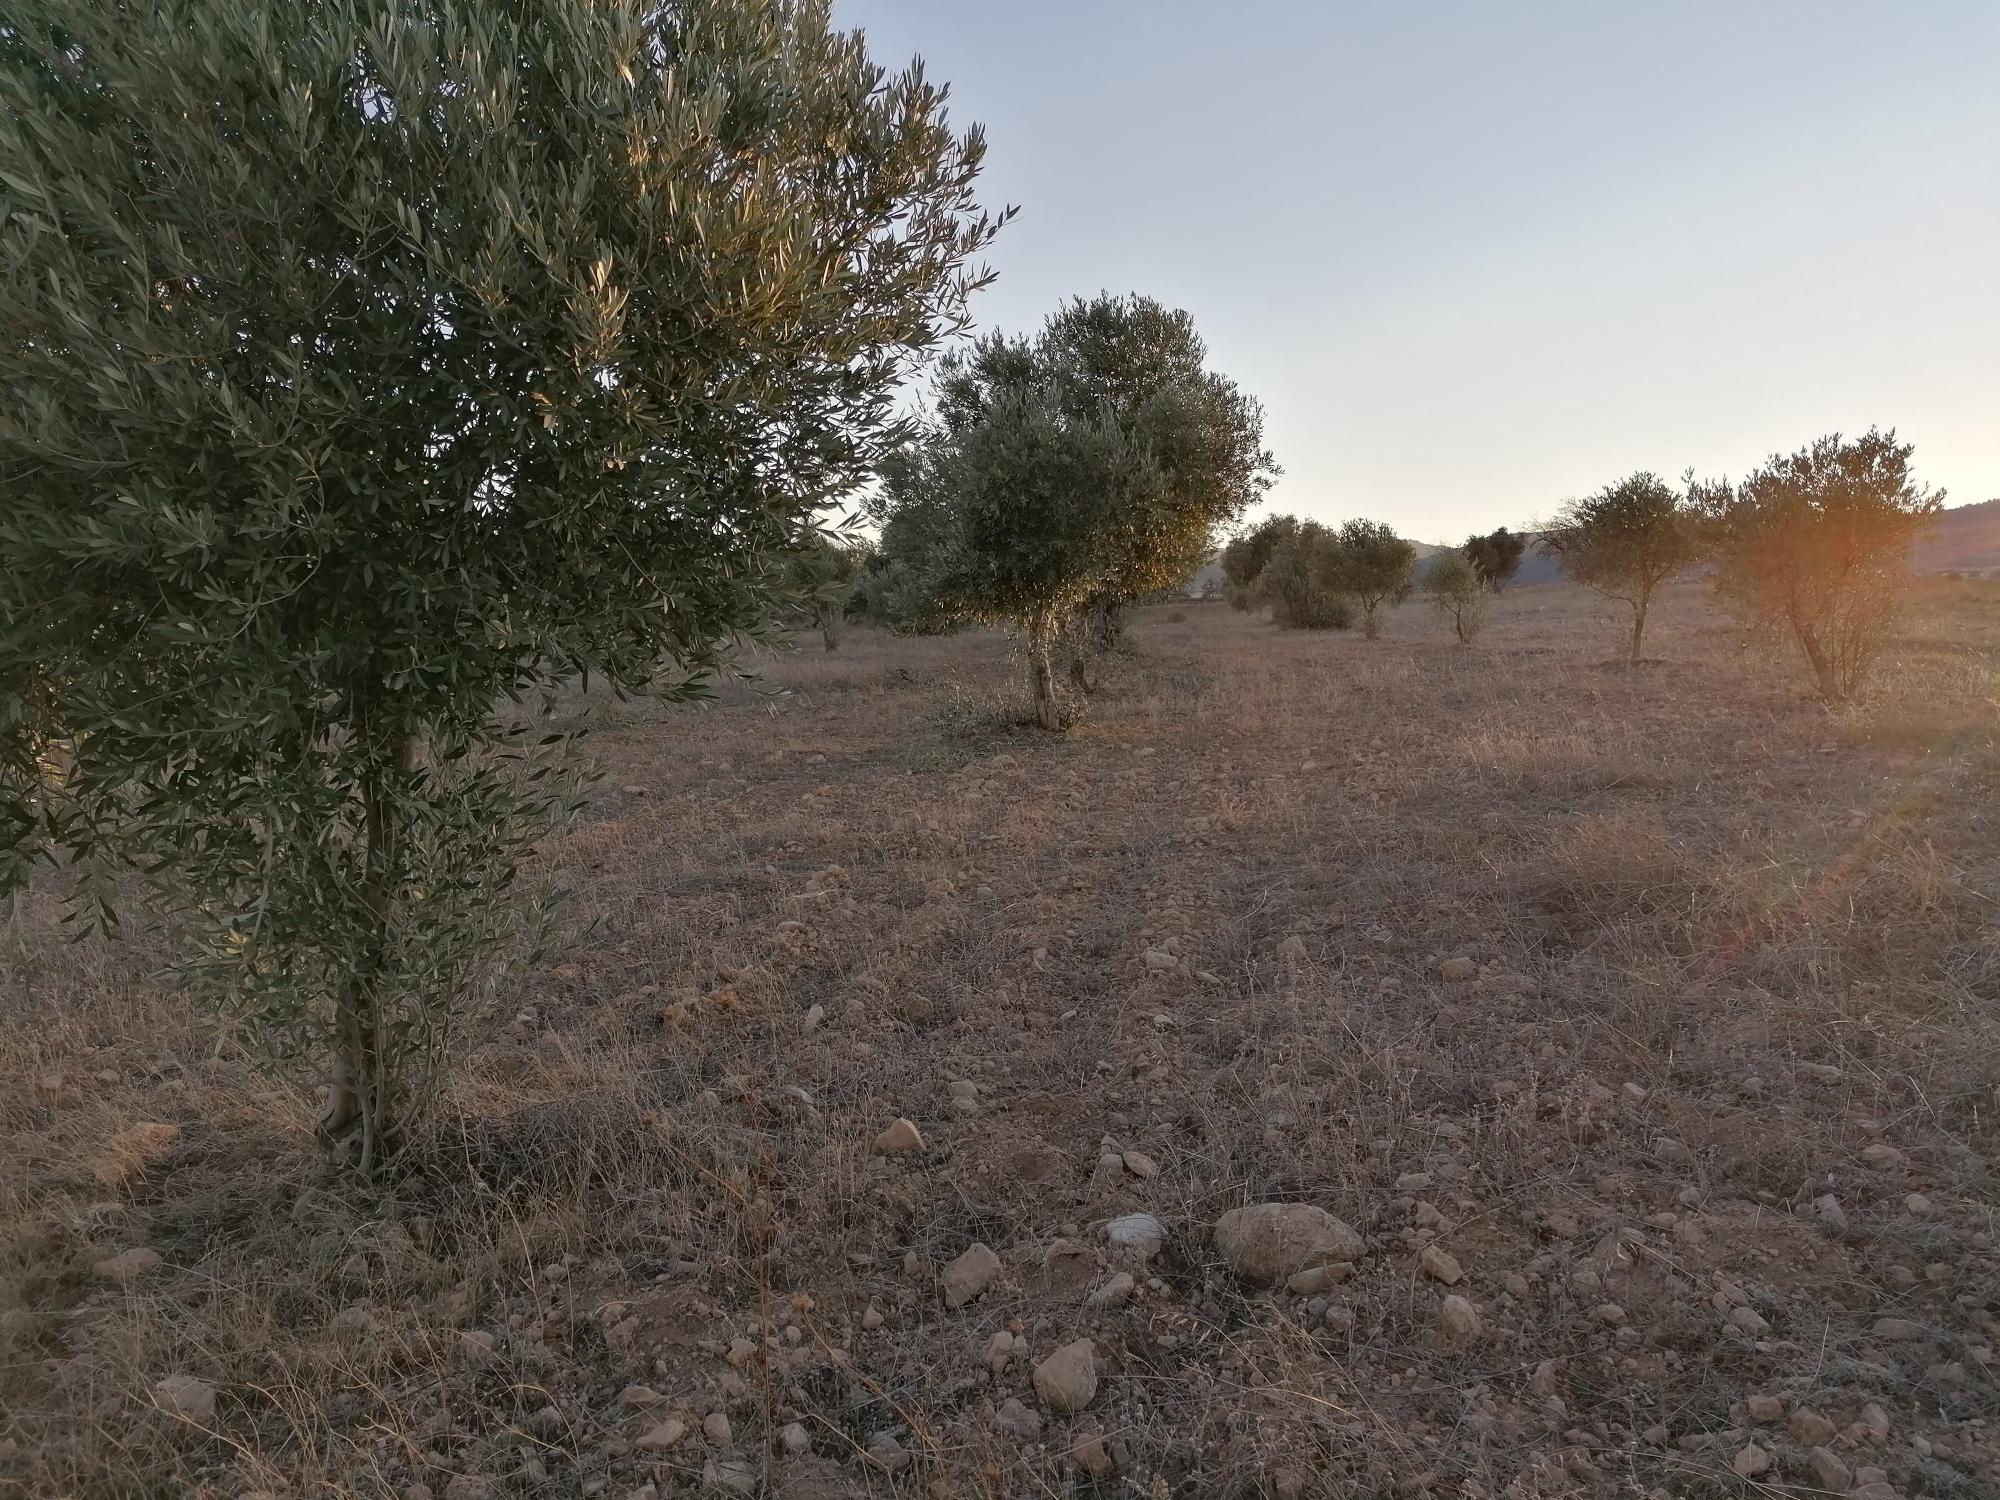 Peritación de cosechas pendientes en terrenos donde se ejecutarán Plantas Solares Fotovoltaicas, T.M. de Andorra (Teruel).